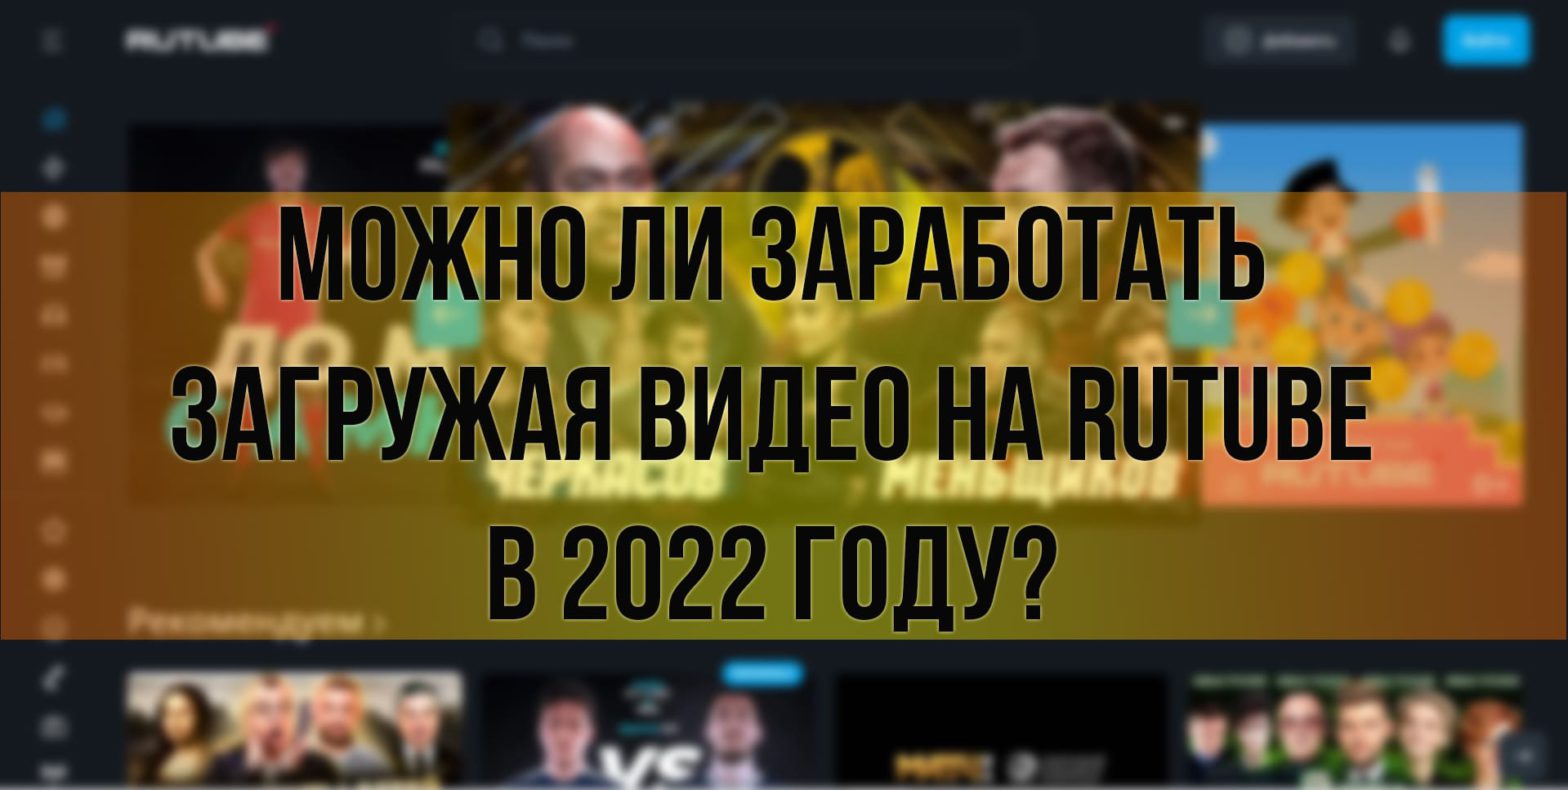 Можно ли заработать загружая видео на Rutube в 2022 году?